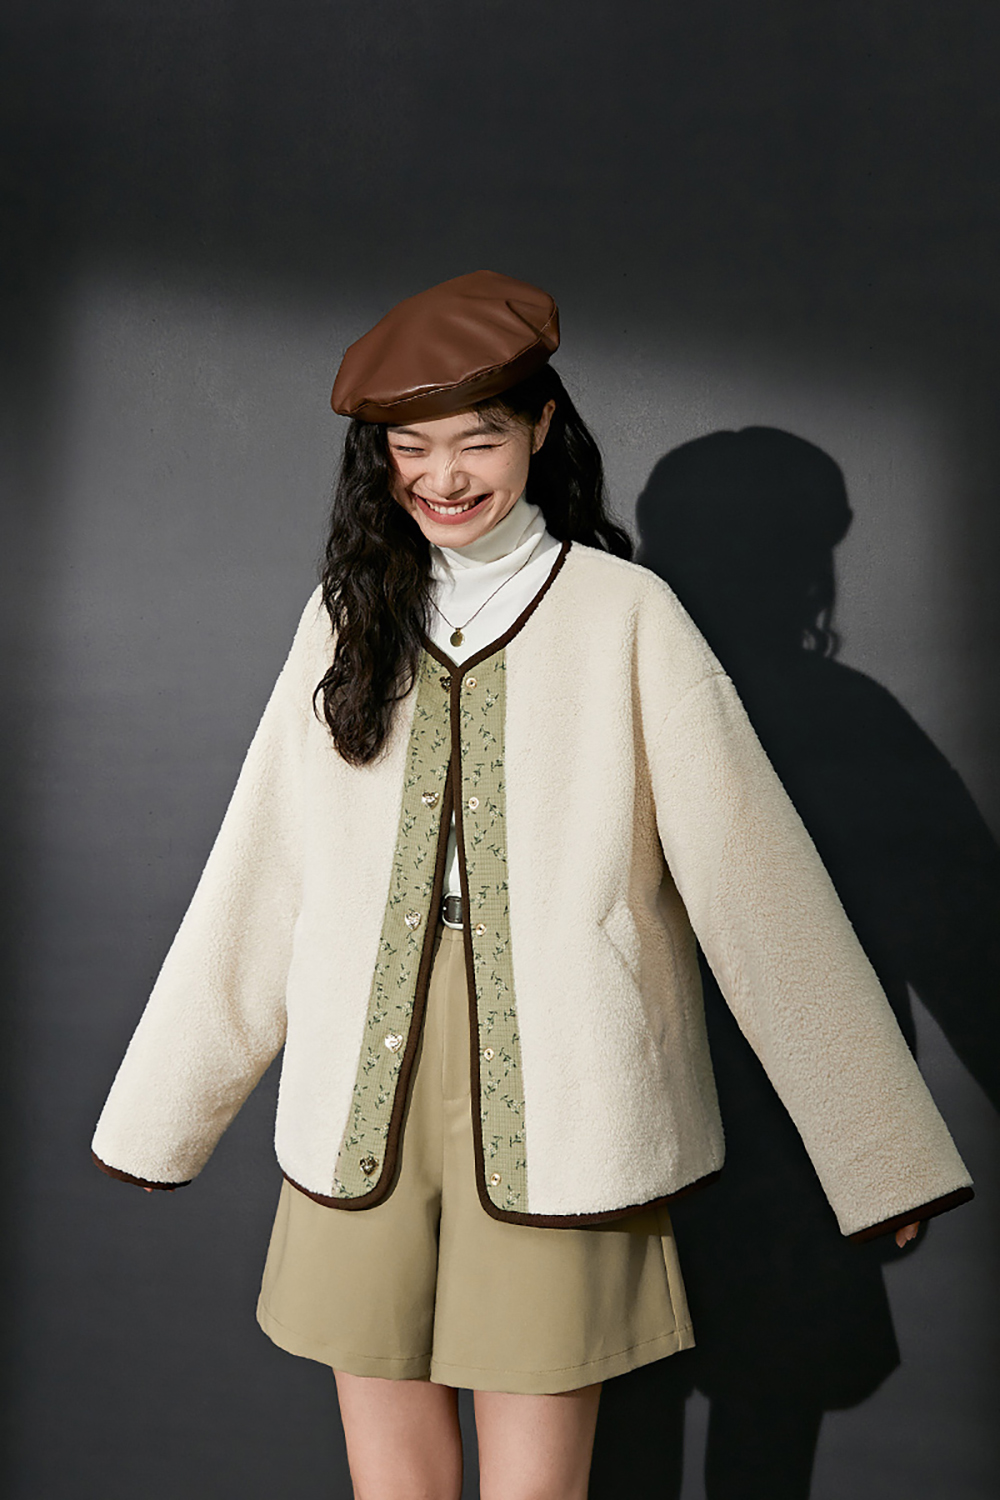 New women's corduroy cotton jacket for autumn/winter 2022